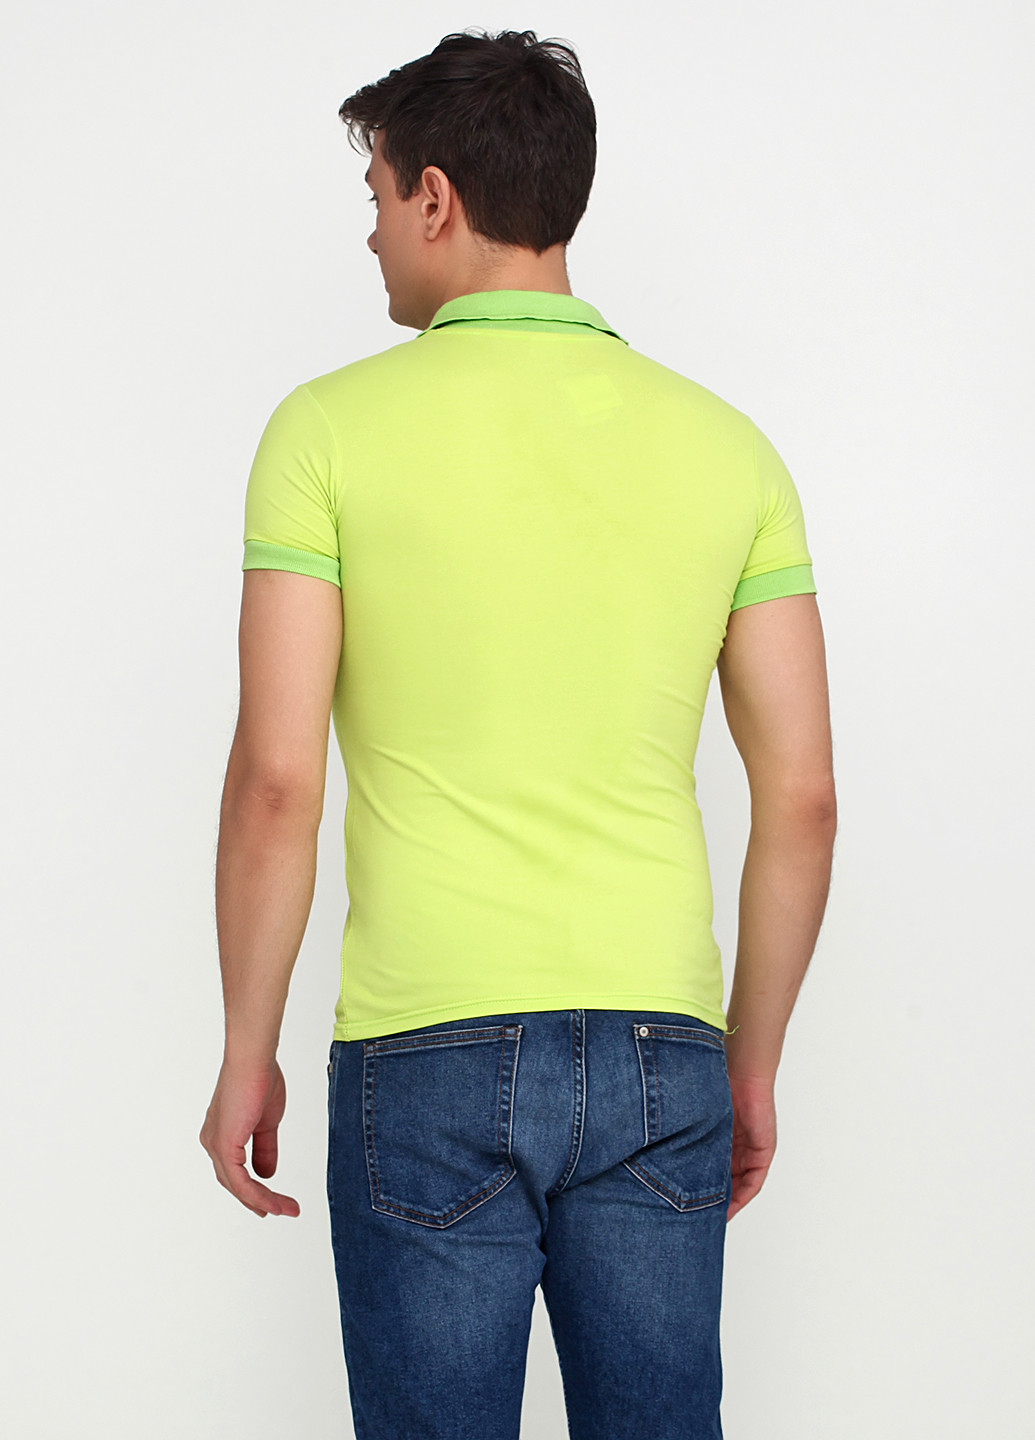 Лимонно-зеленая футболка-поло для мужчин EL & KEN с рисунком